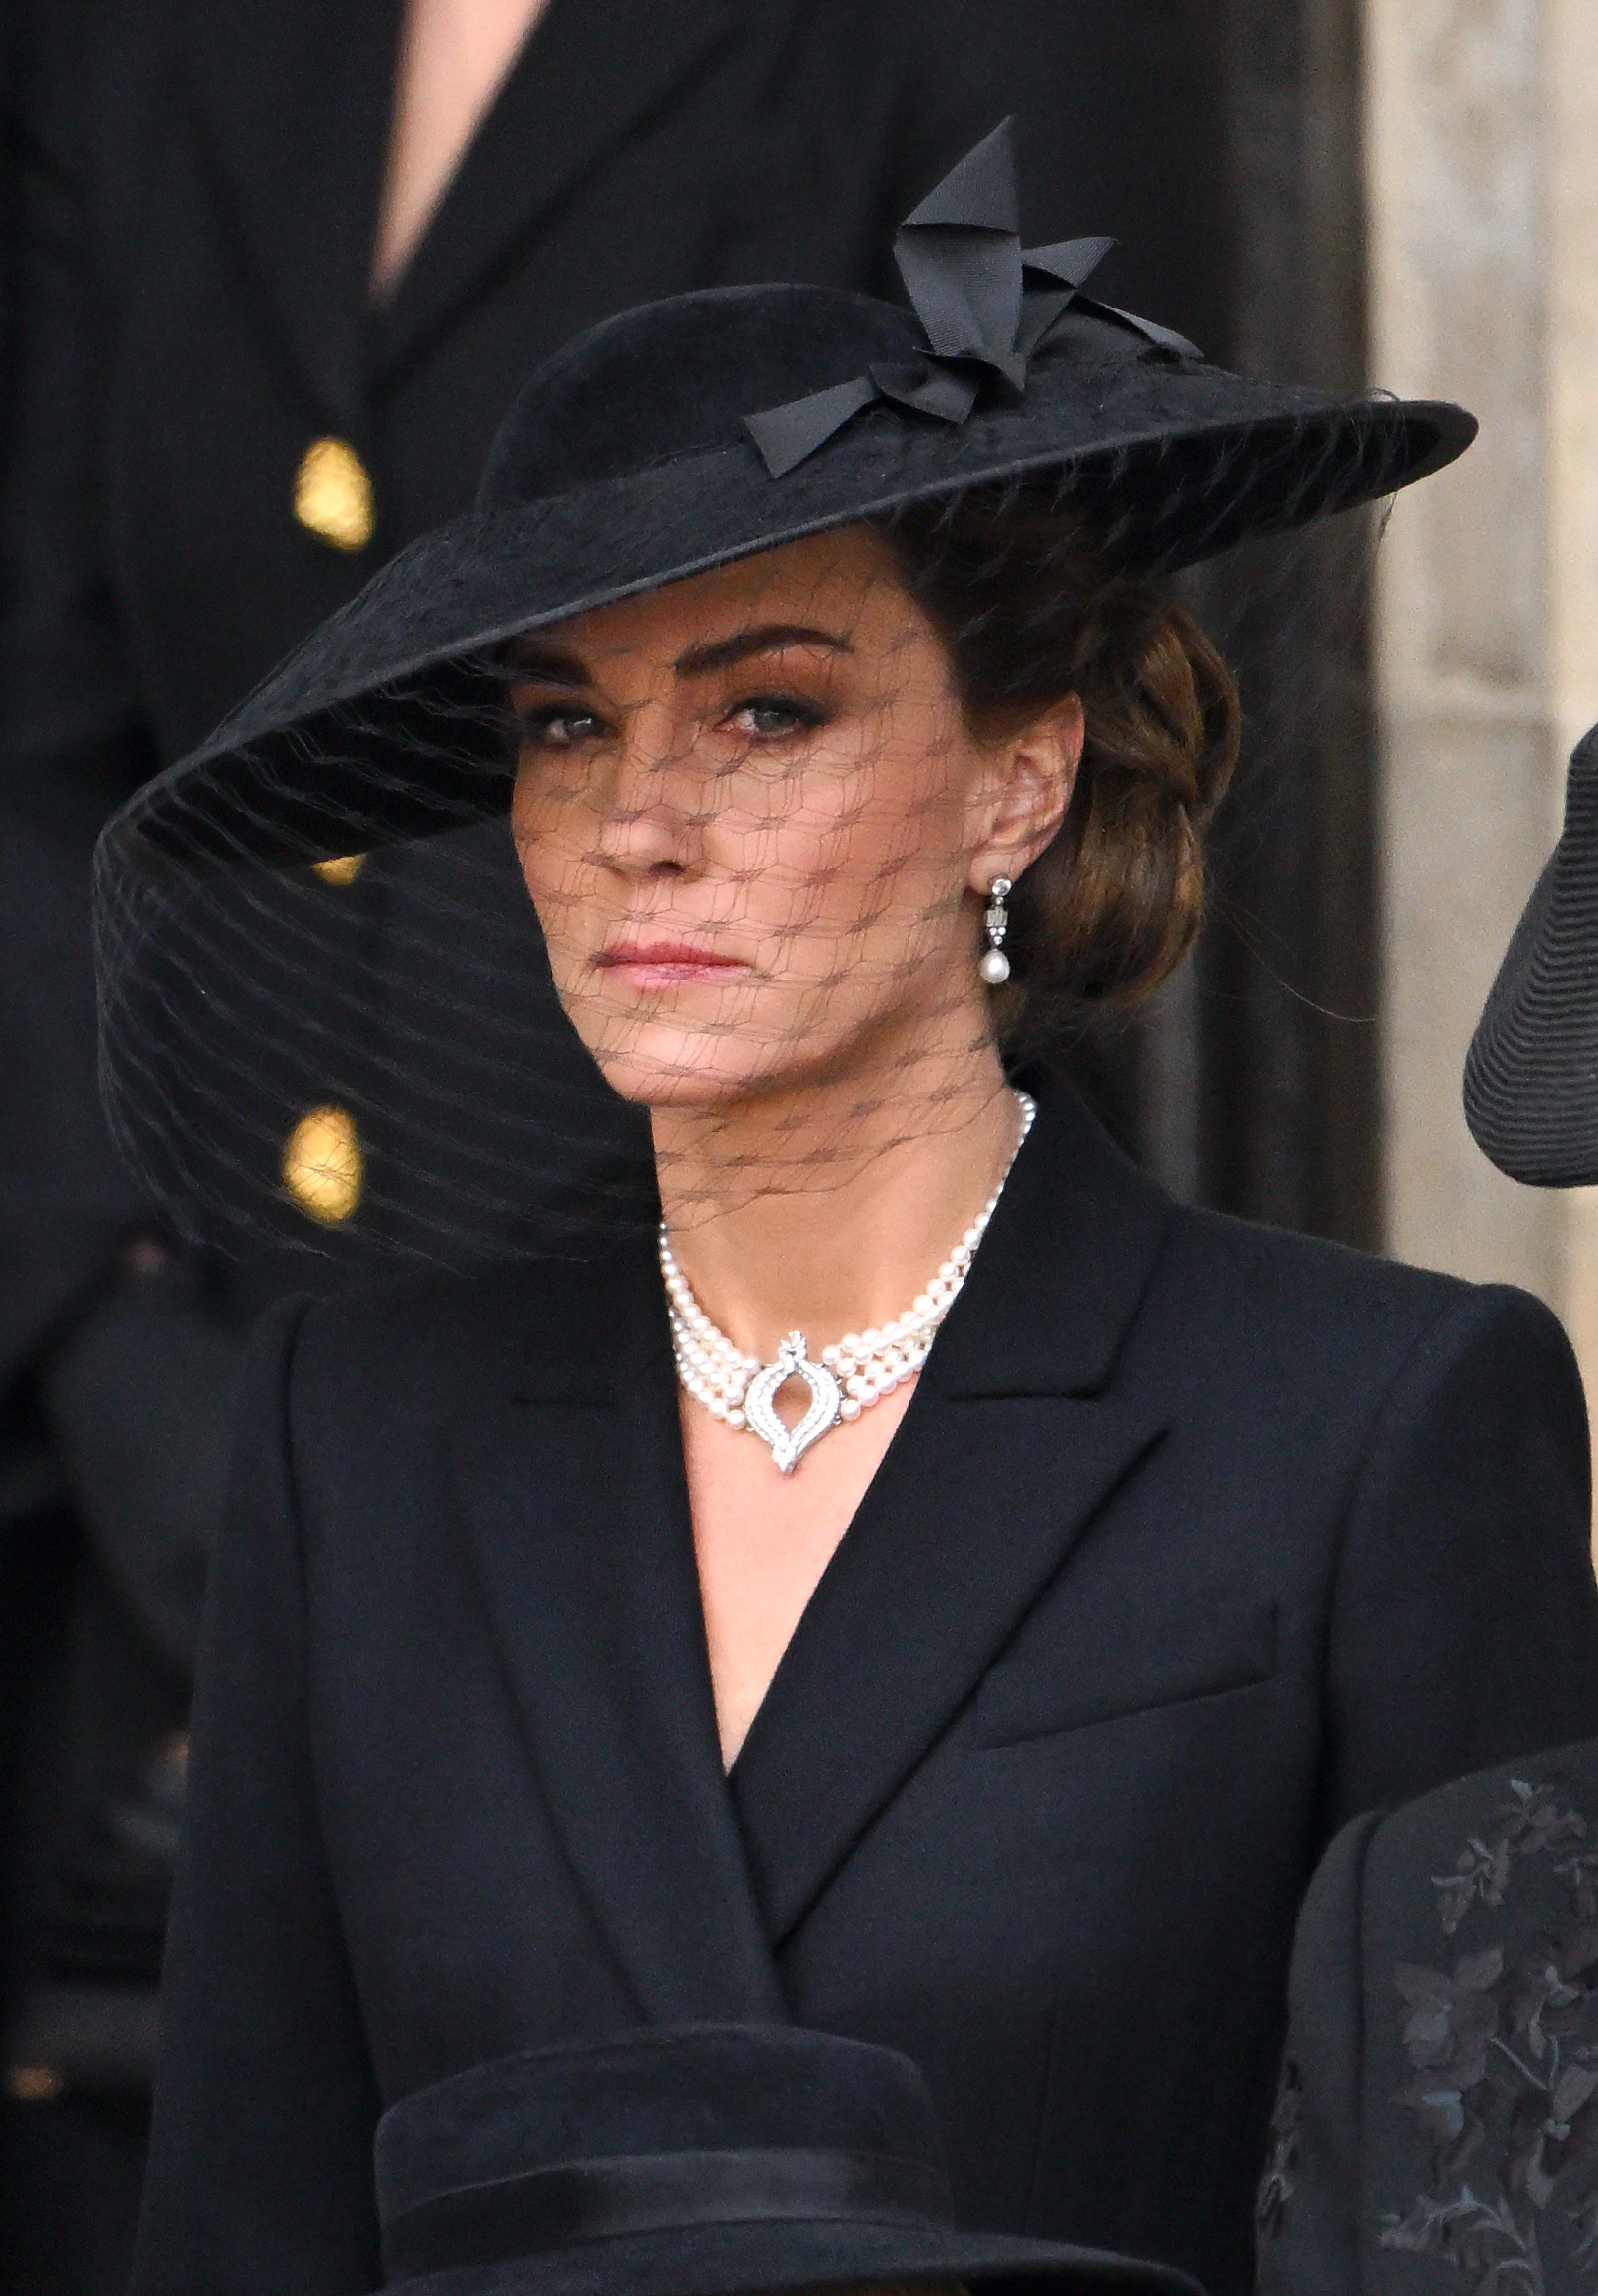 ABAJO: Kate Middleton Diana de Gales y el collar favorito de la reina Isabel II